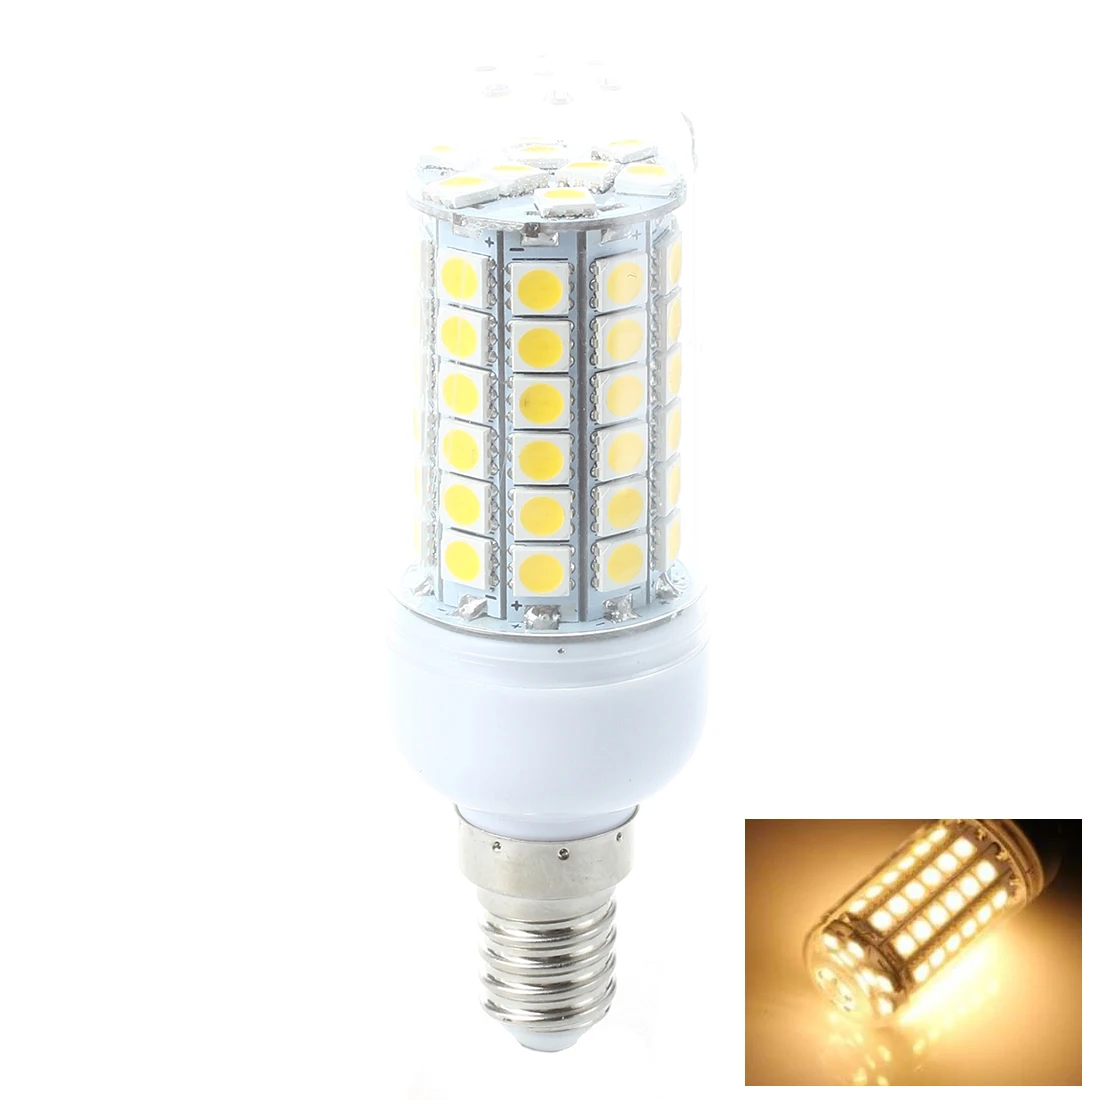 Лампа для проектора лампа теплый белый 8 Вт E14 69 светодио дный SMD 5050 AC 220 В 3000 К